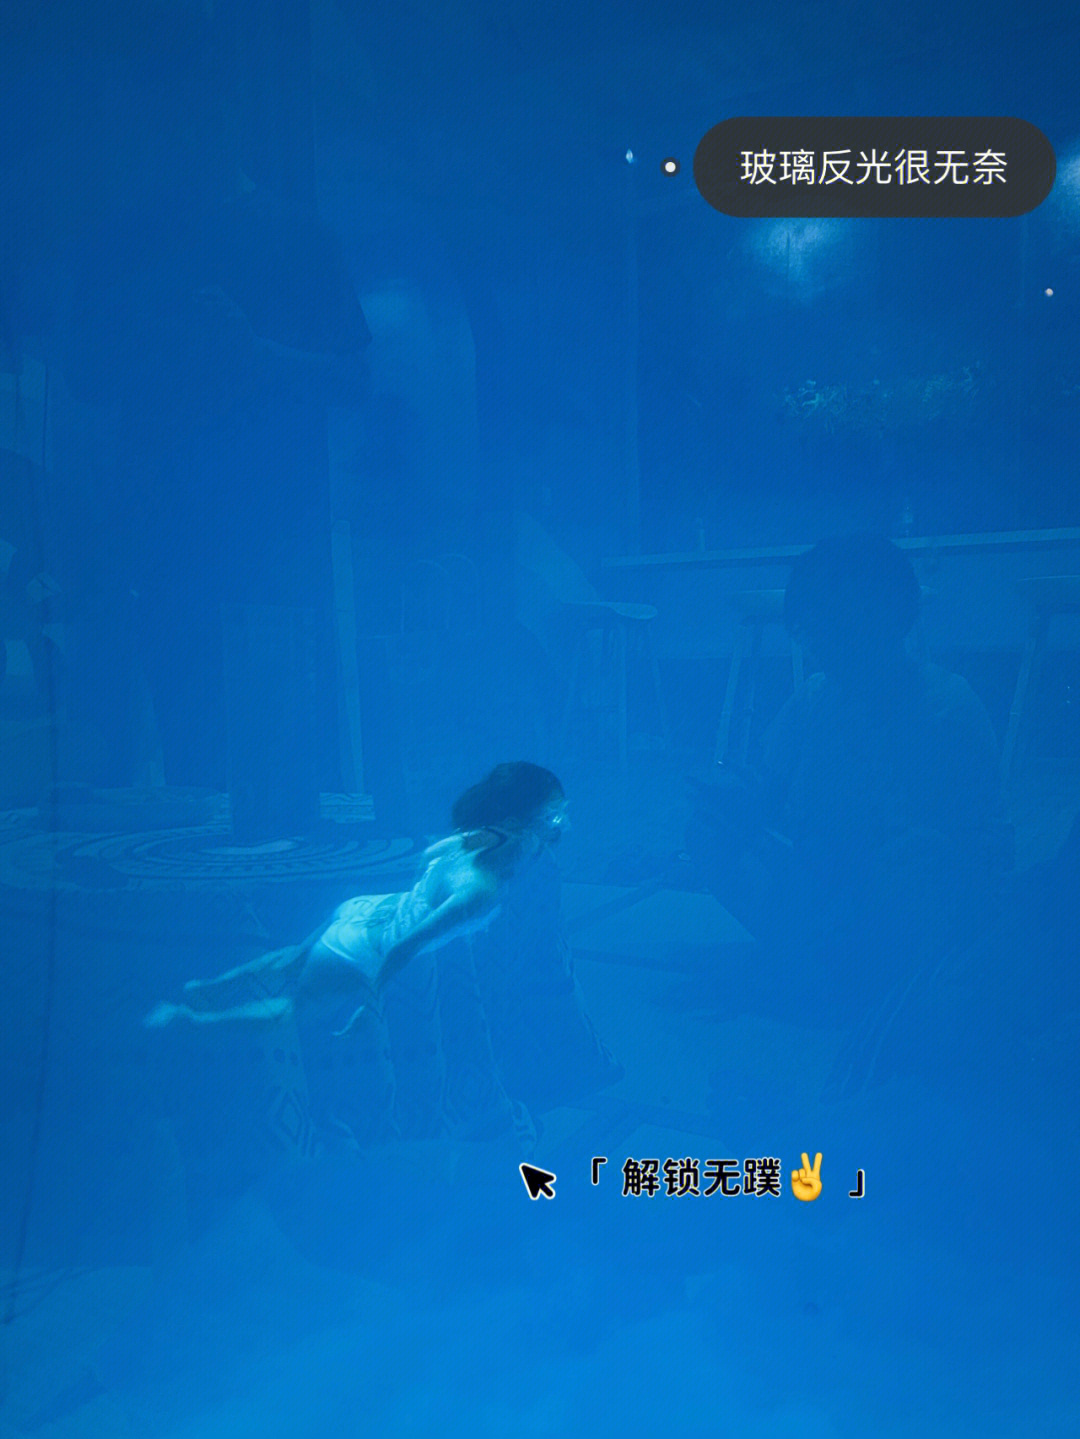 自由潜0469女海王下水了